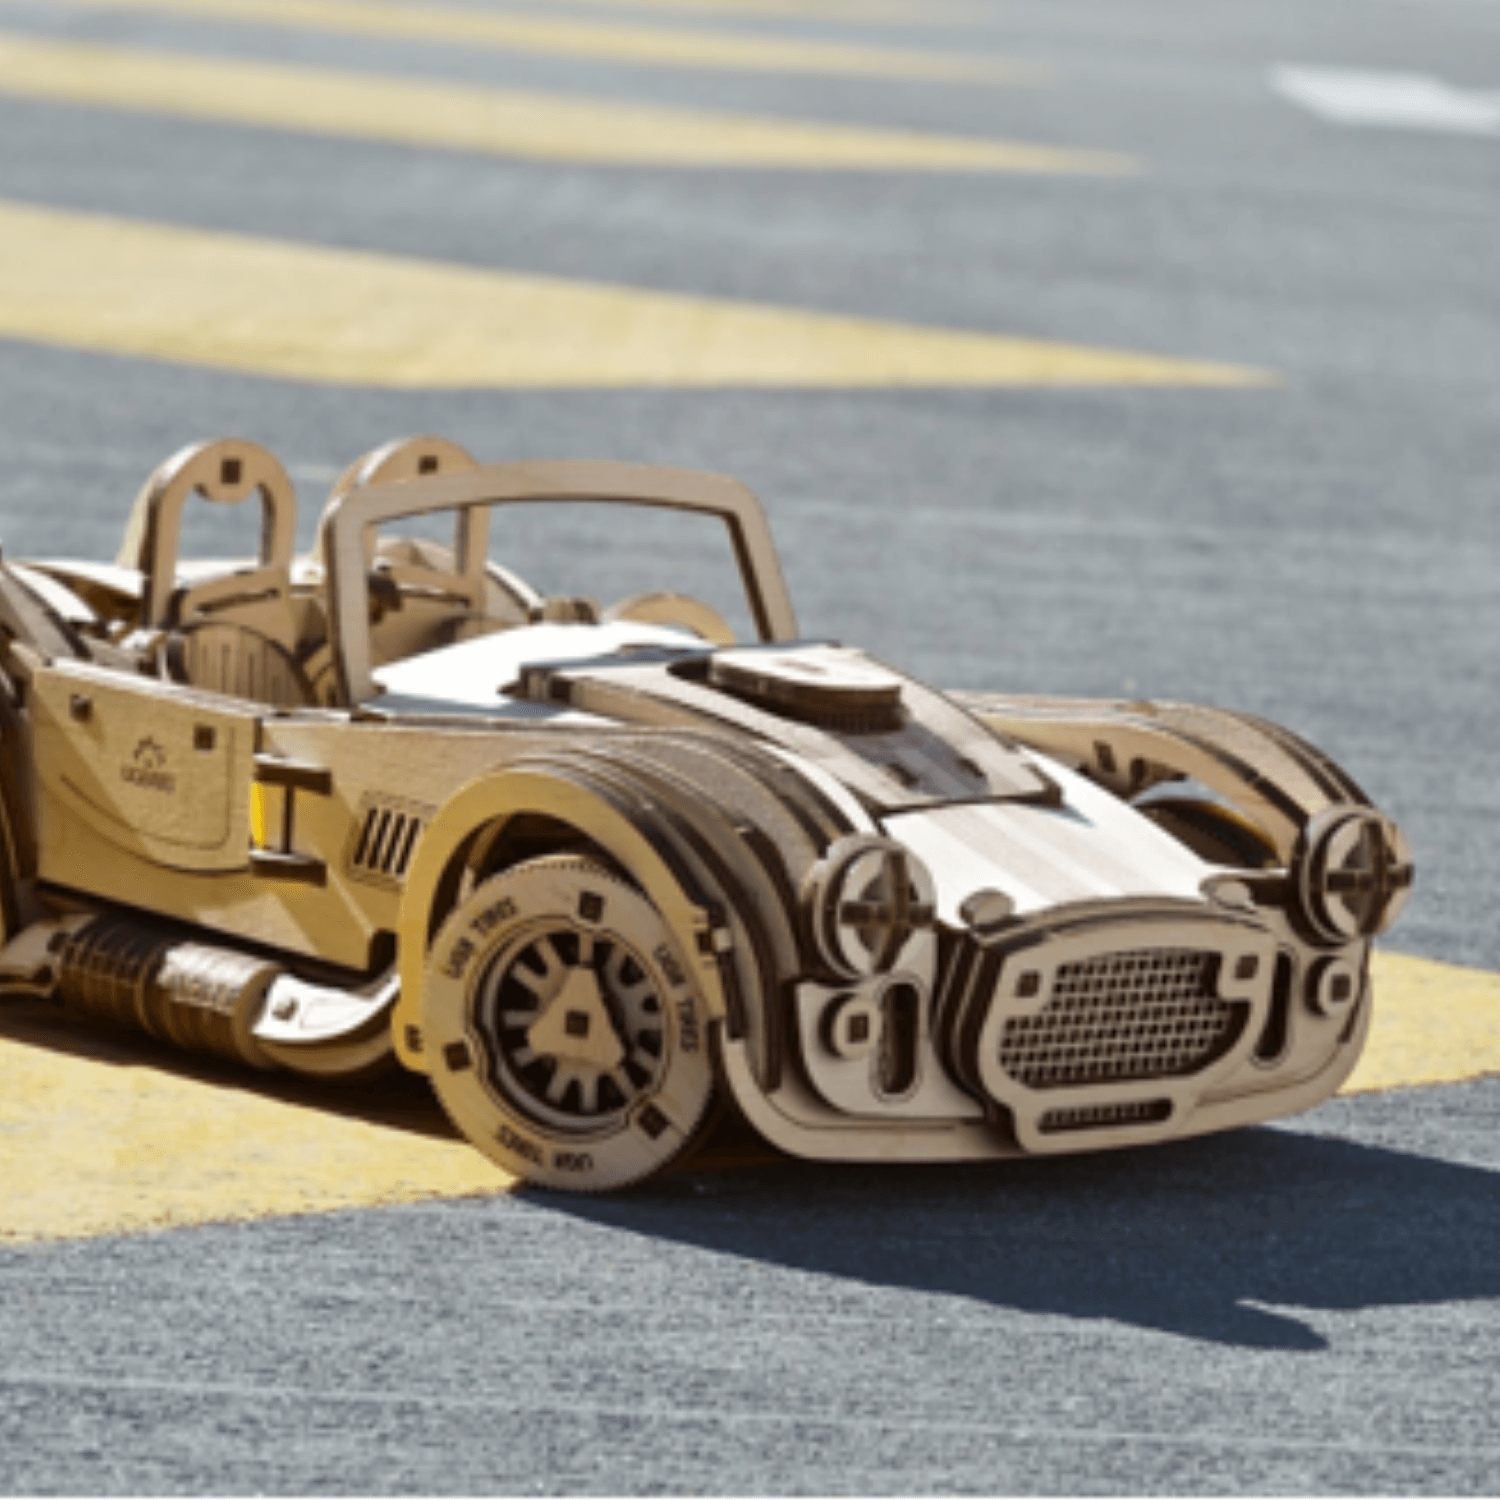 Drift Cobra Racing Car